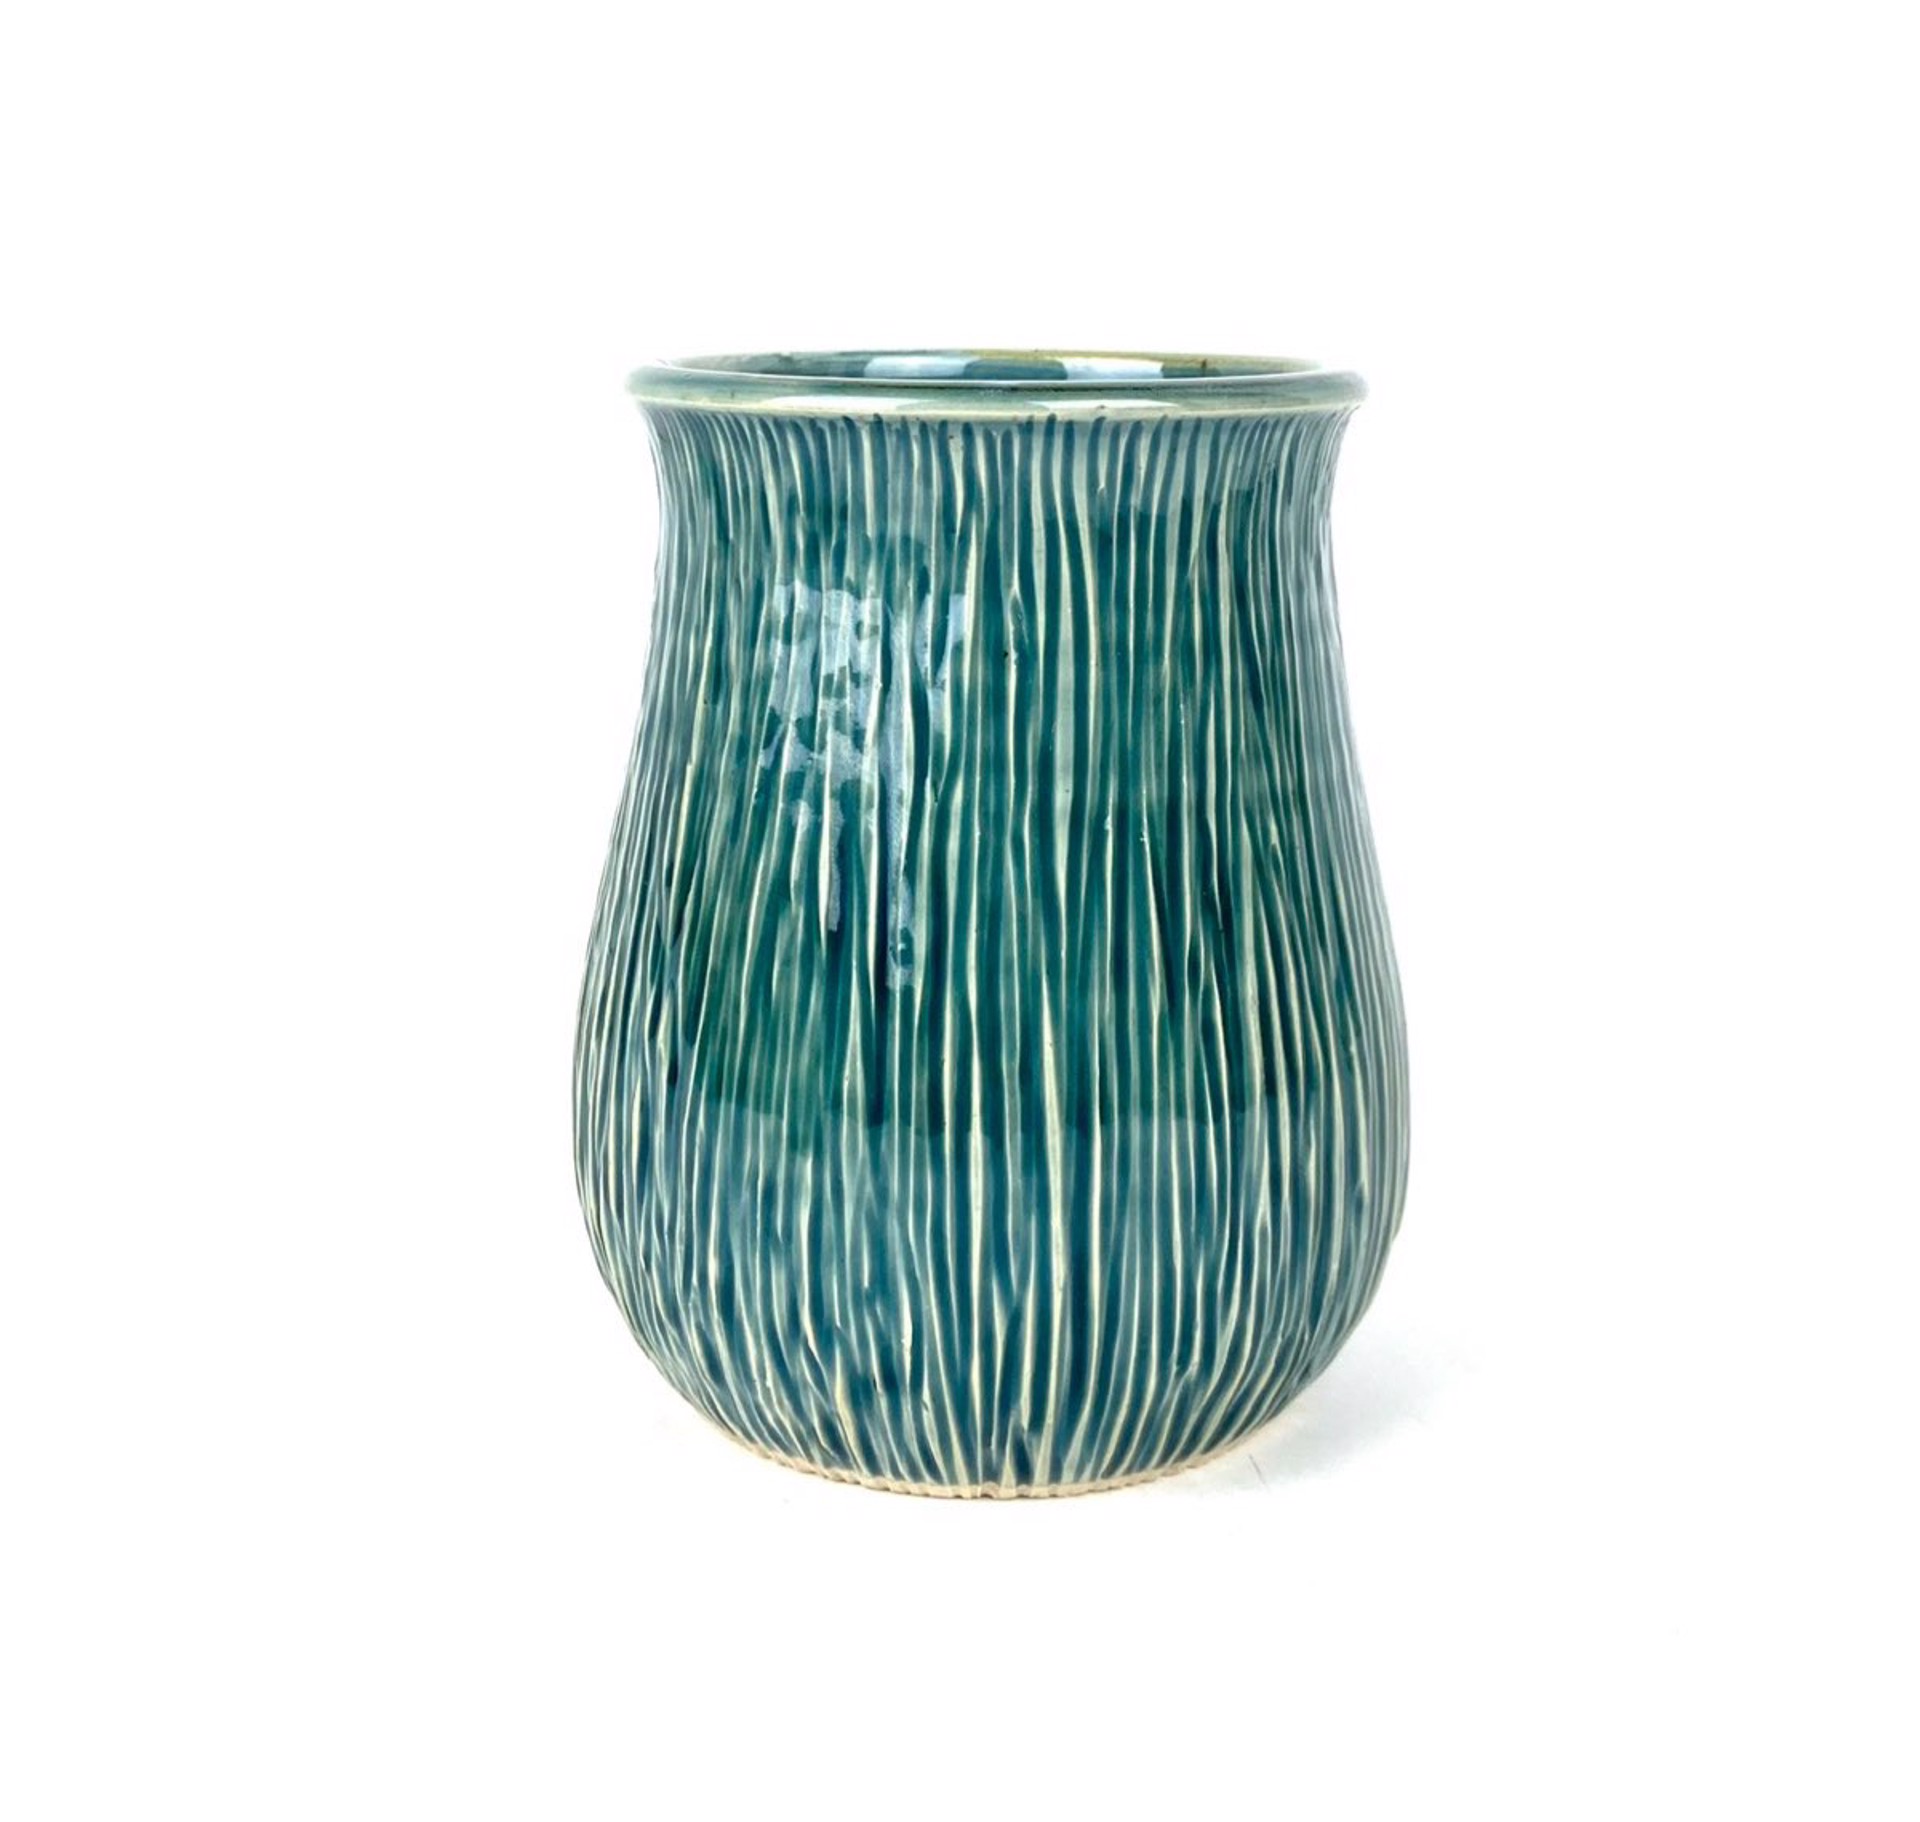 Vase by Mary Lynn Portera